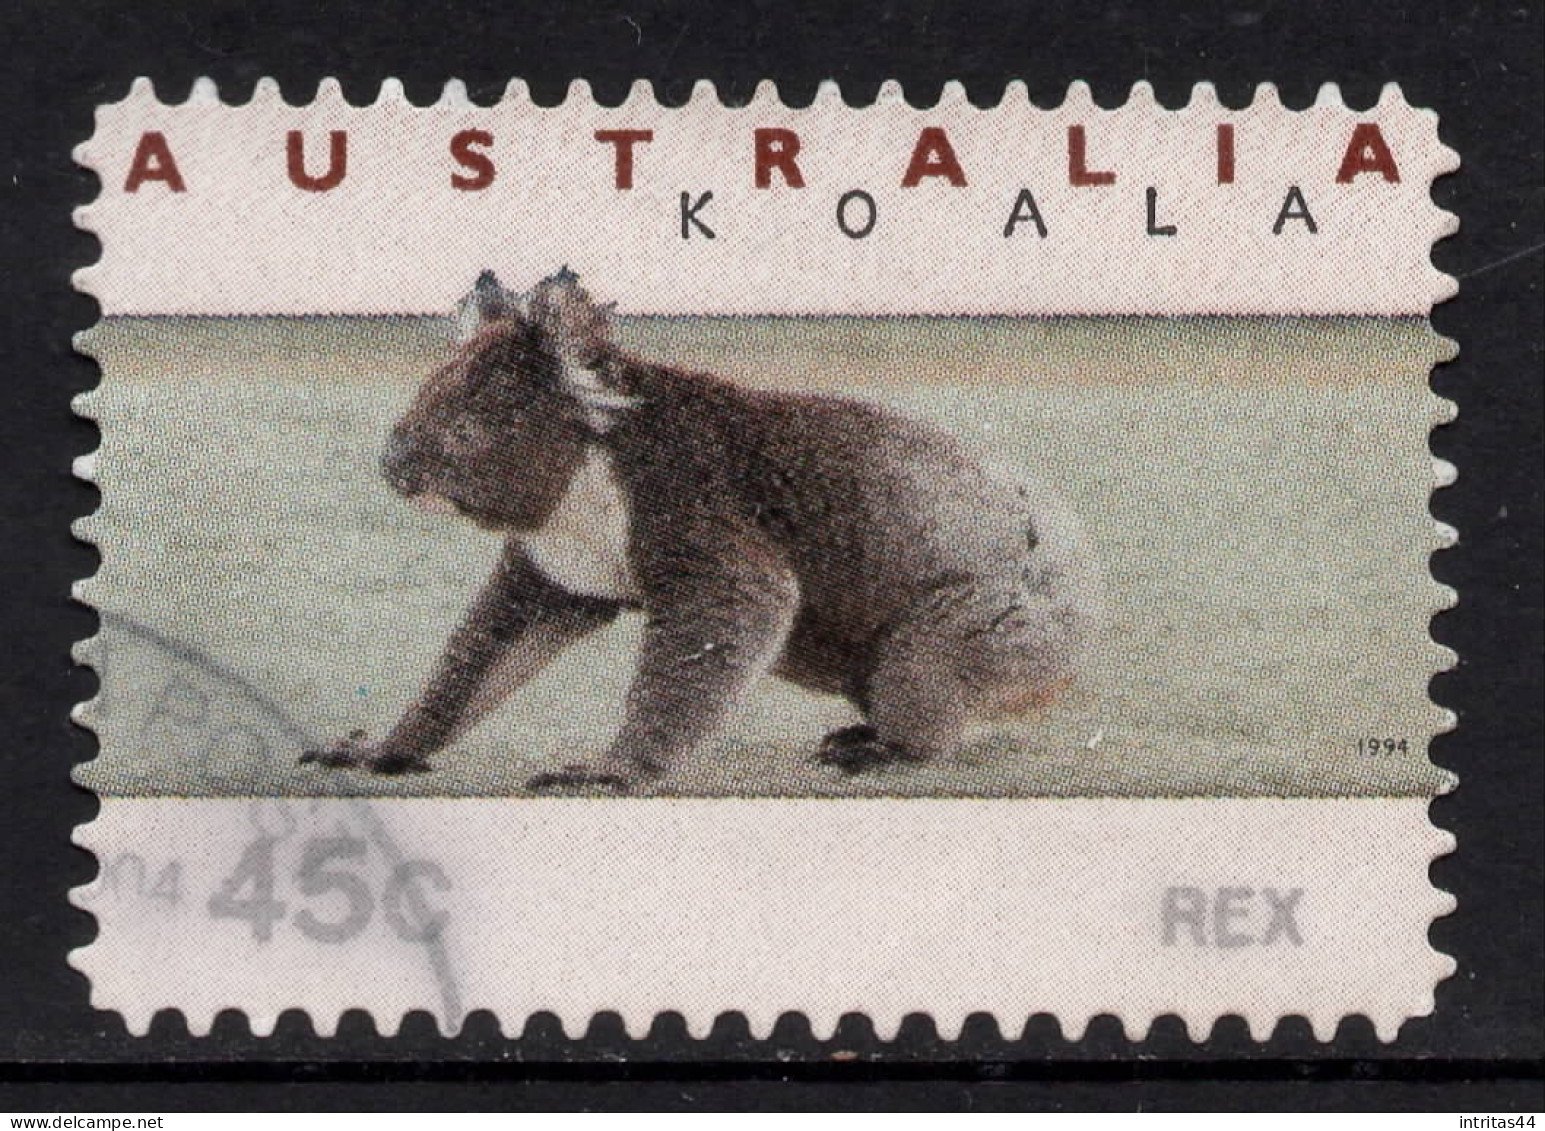 AUSTRALIA 1994 KOALA AND KANGAROO (COUNTER PRINTED) "45c KOALA ON GROUND" STAMP VFU - Gebraucht